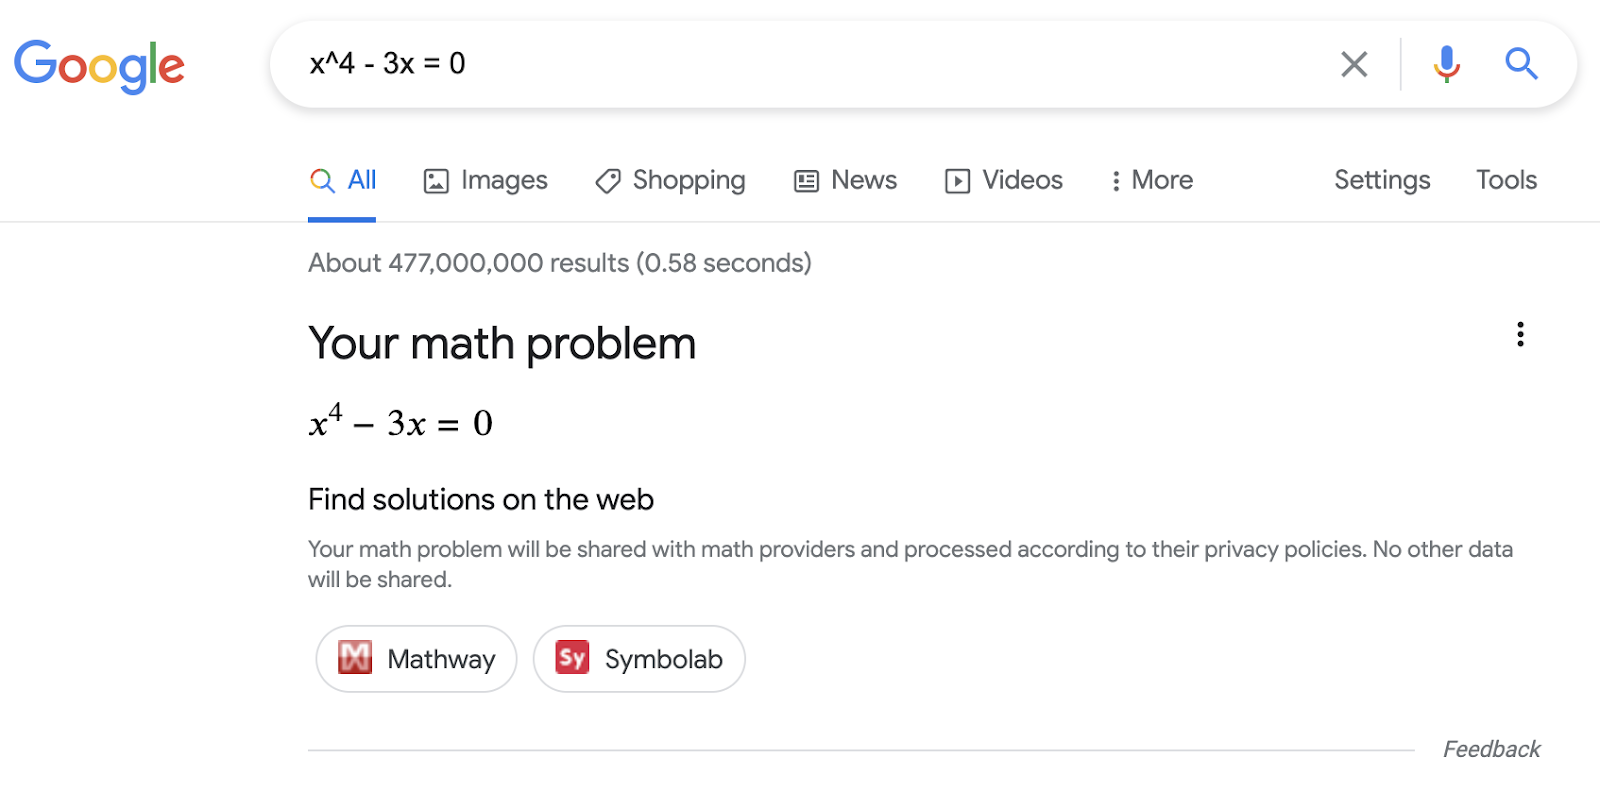 Risultato avanzato di risolutori matematici sulla Ricerca Google